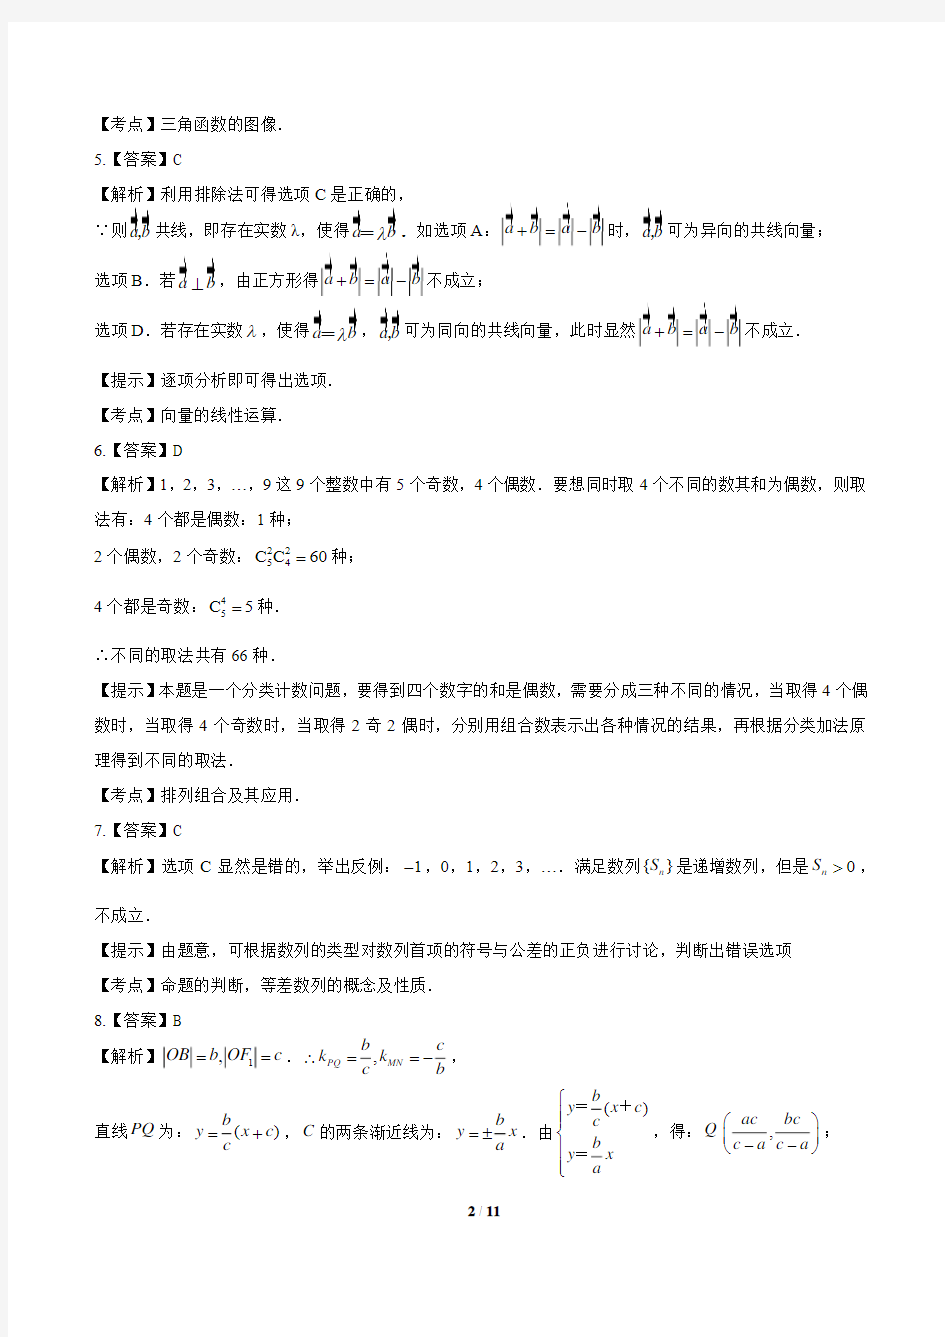 2012年高考理科数学浙江卷-答案